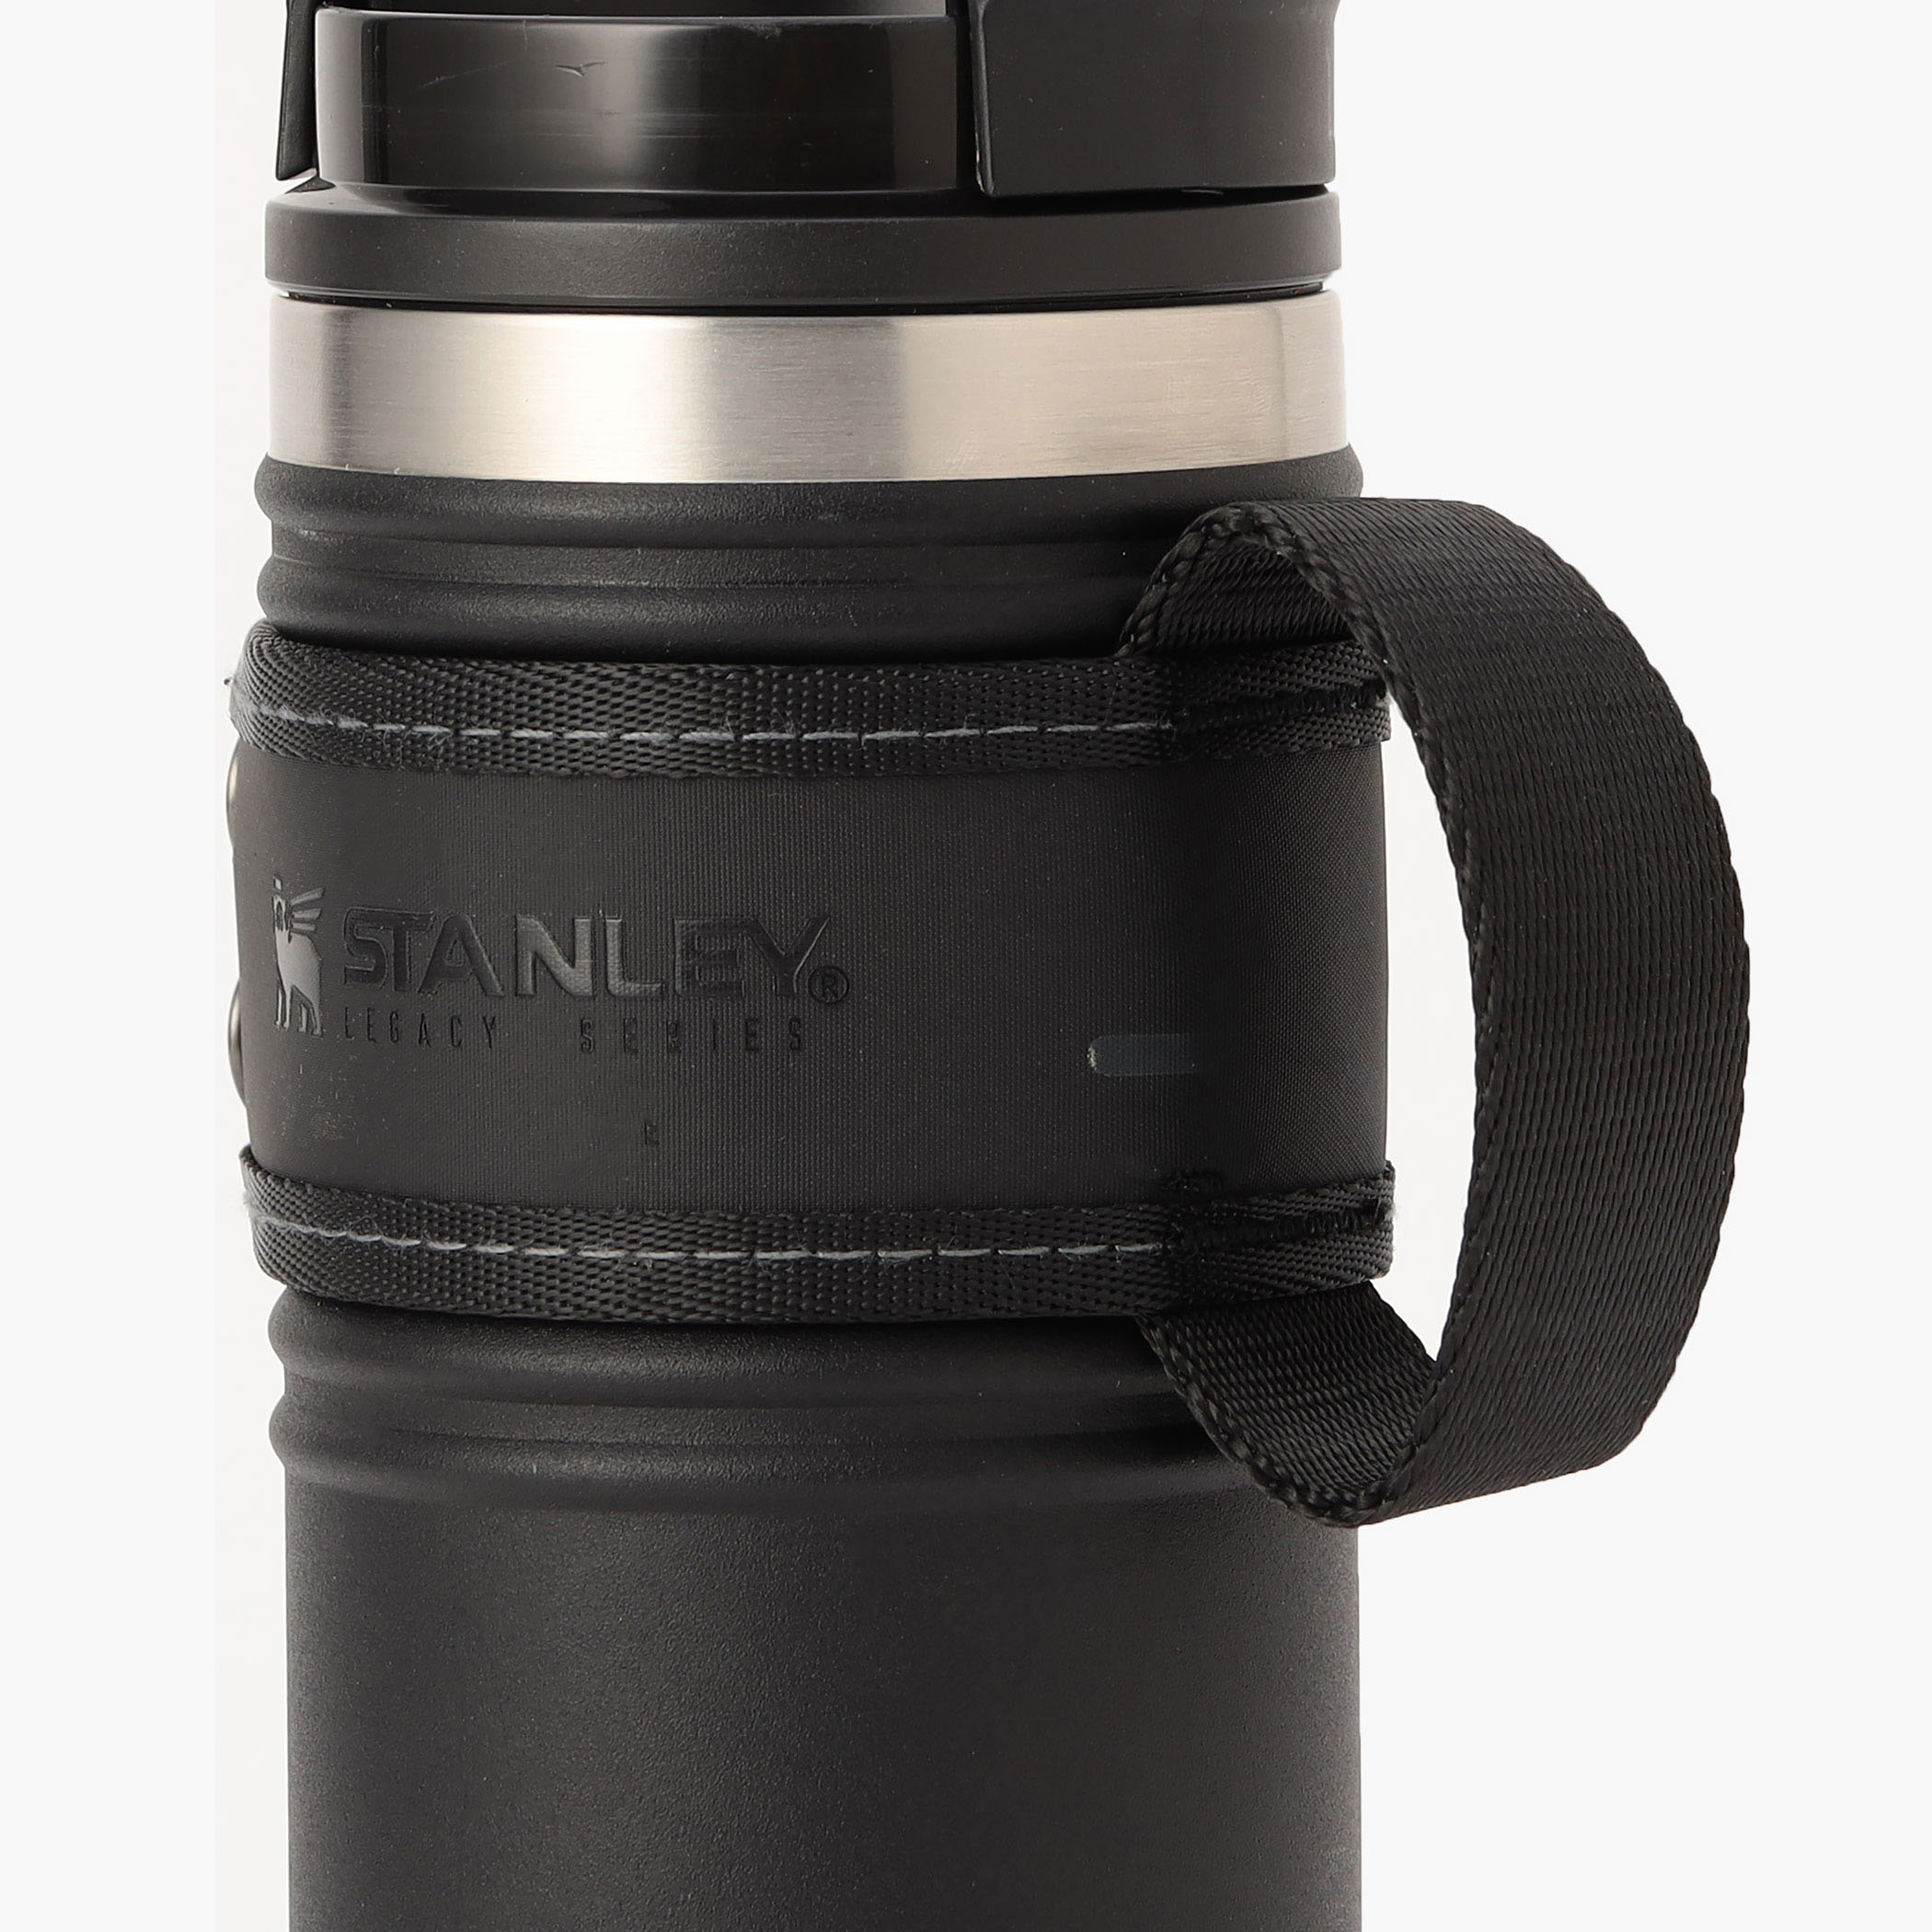 STANLEY × BRIEFING、オールブラックカラーの初コラボアイテム発売 